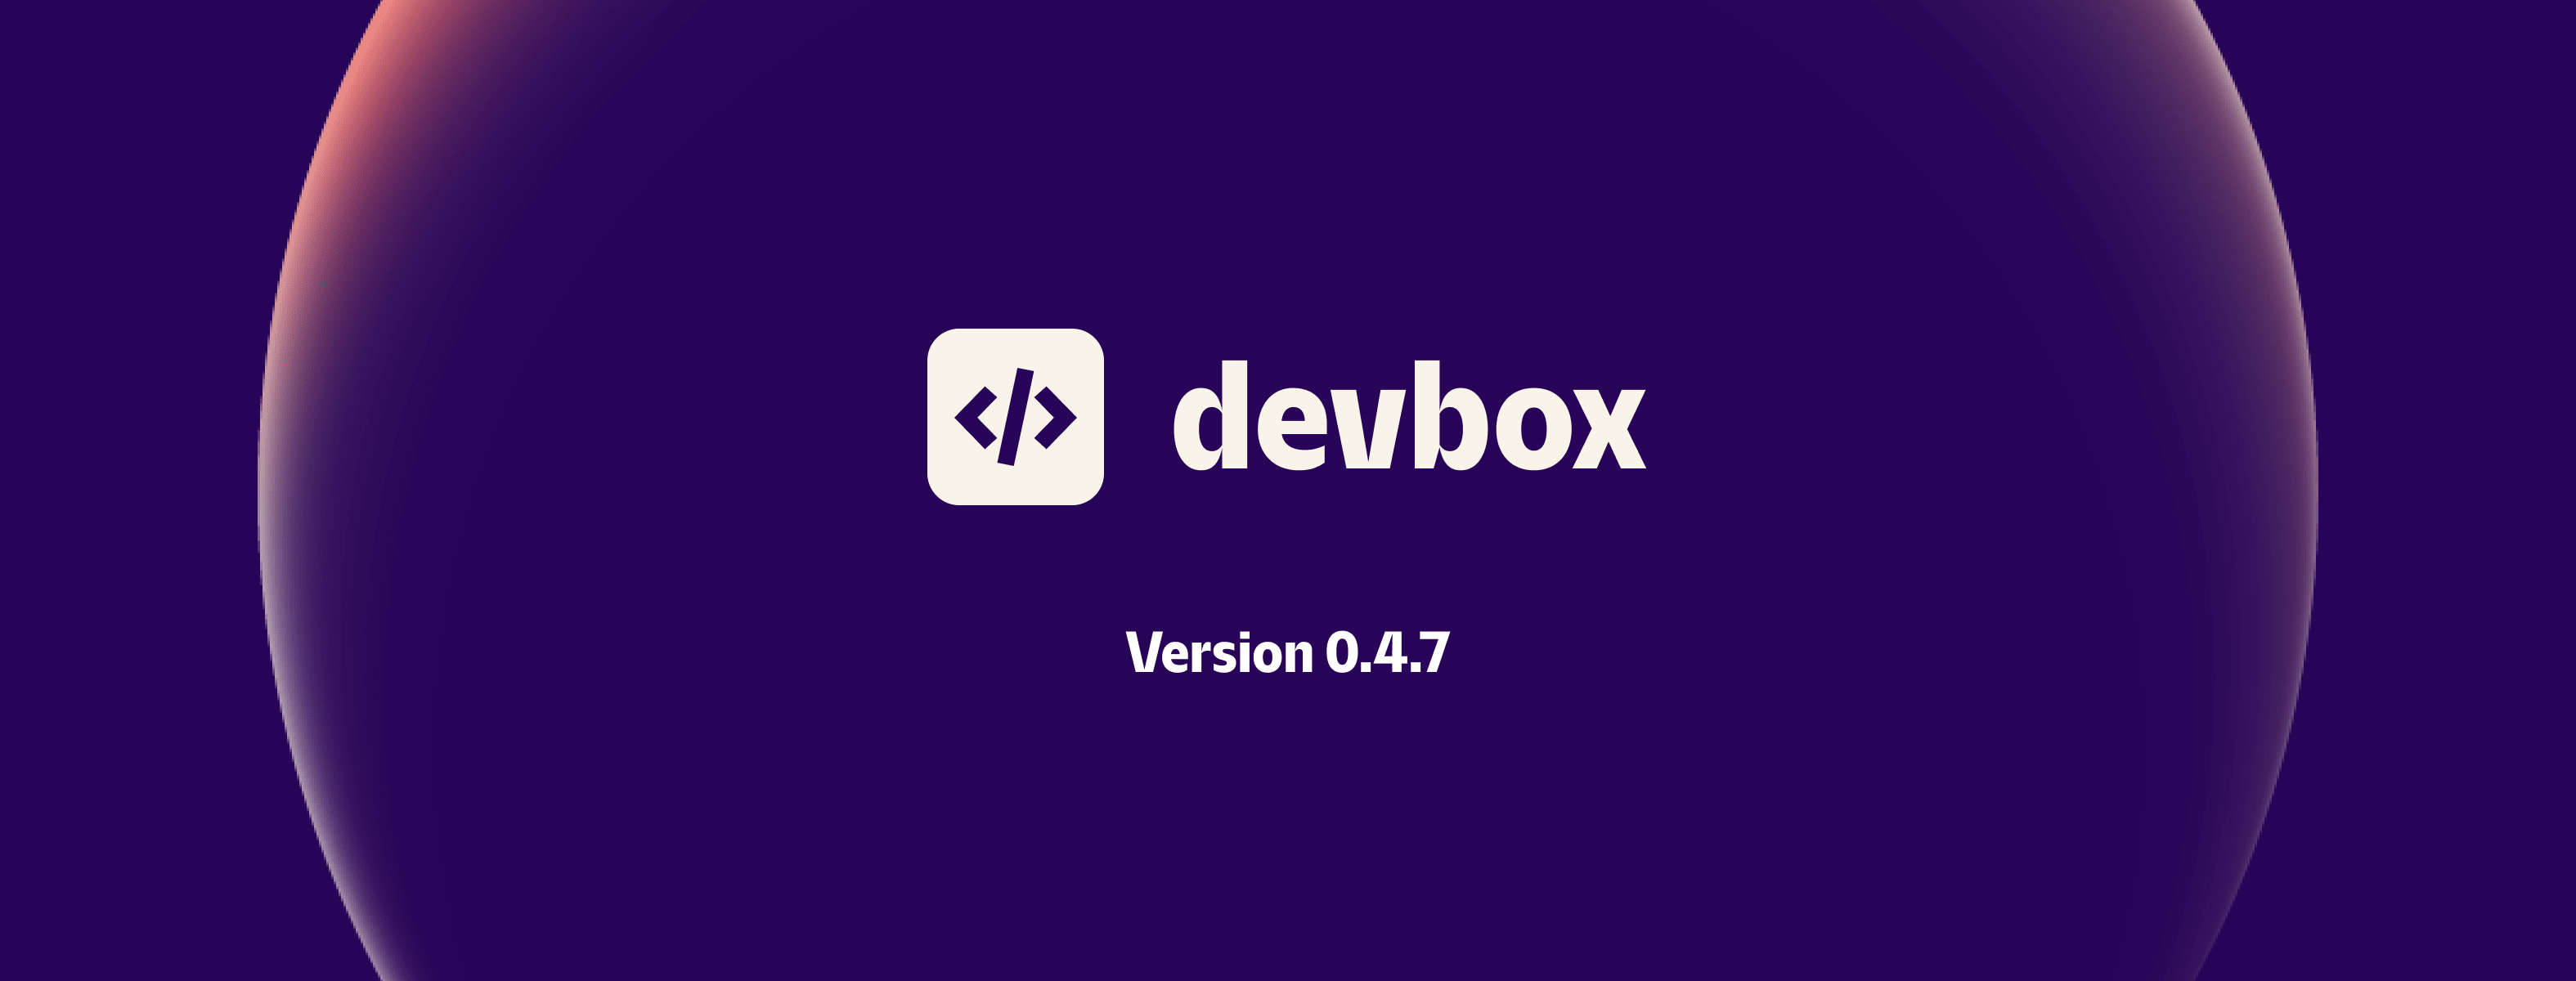 Devbox 0.4.7: Services 2.0 + Flake Support